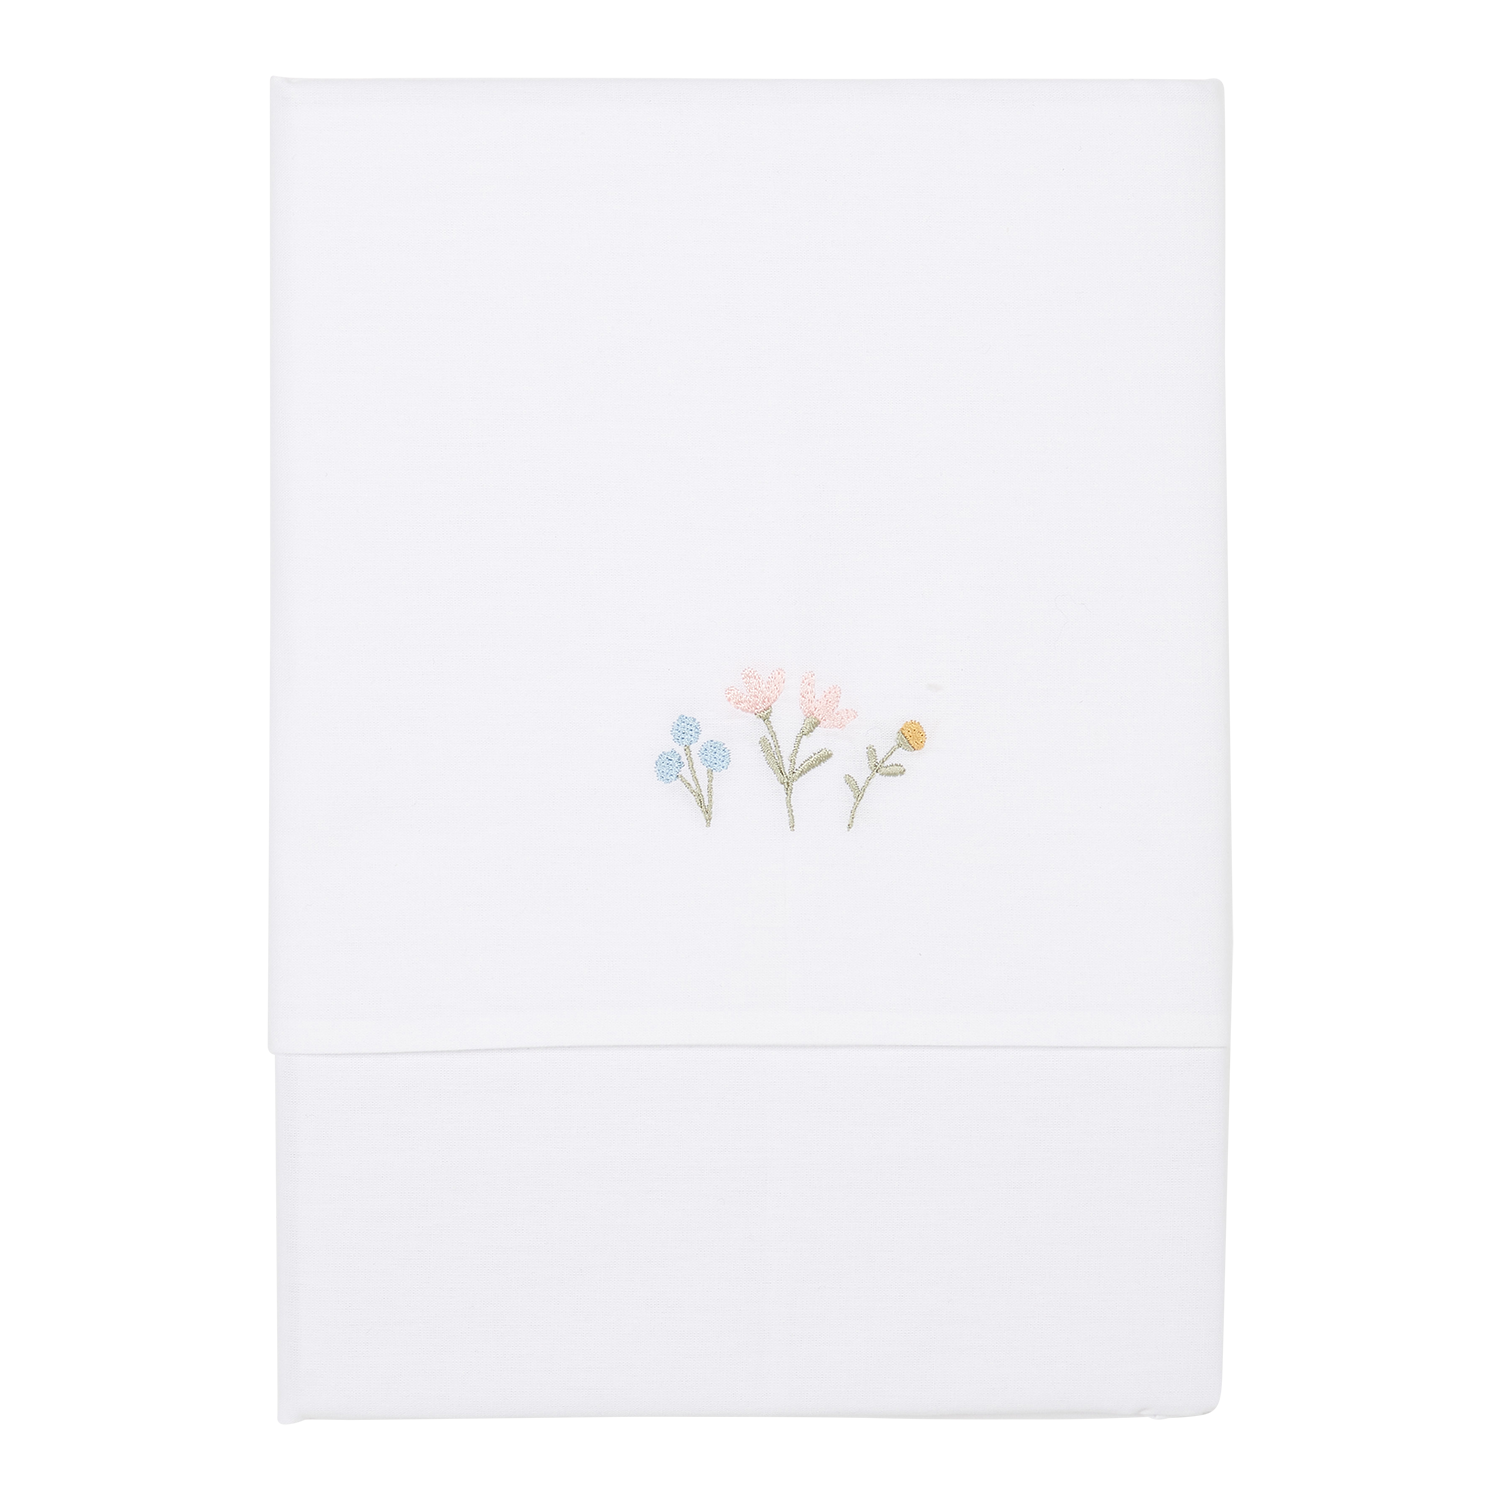 Babybettlaken Wiegenlaken bestickt Little Flowers & Butterflies / Blumen & Schmetterlinge (70x100 cm)